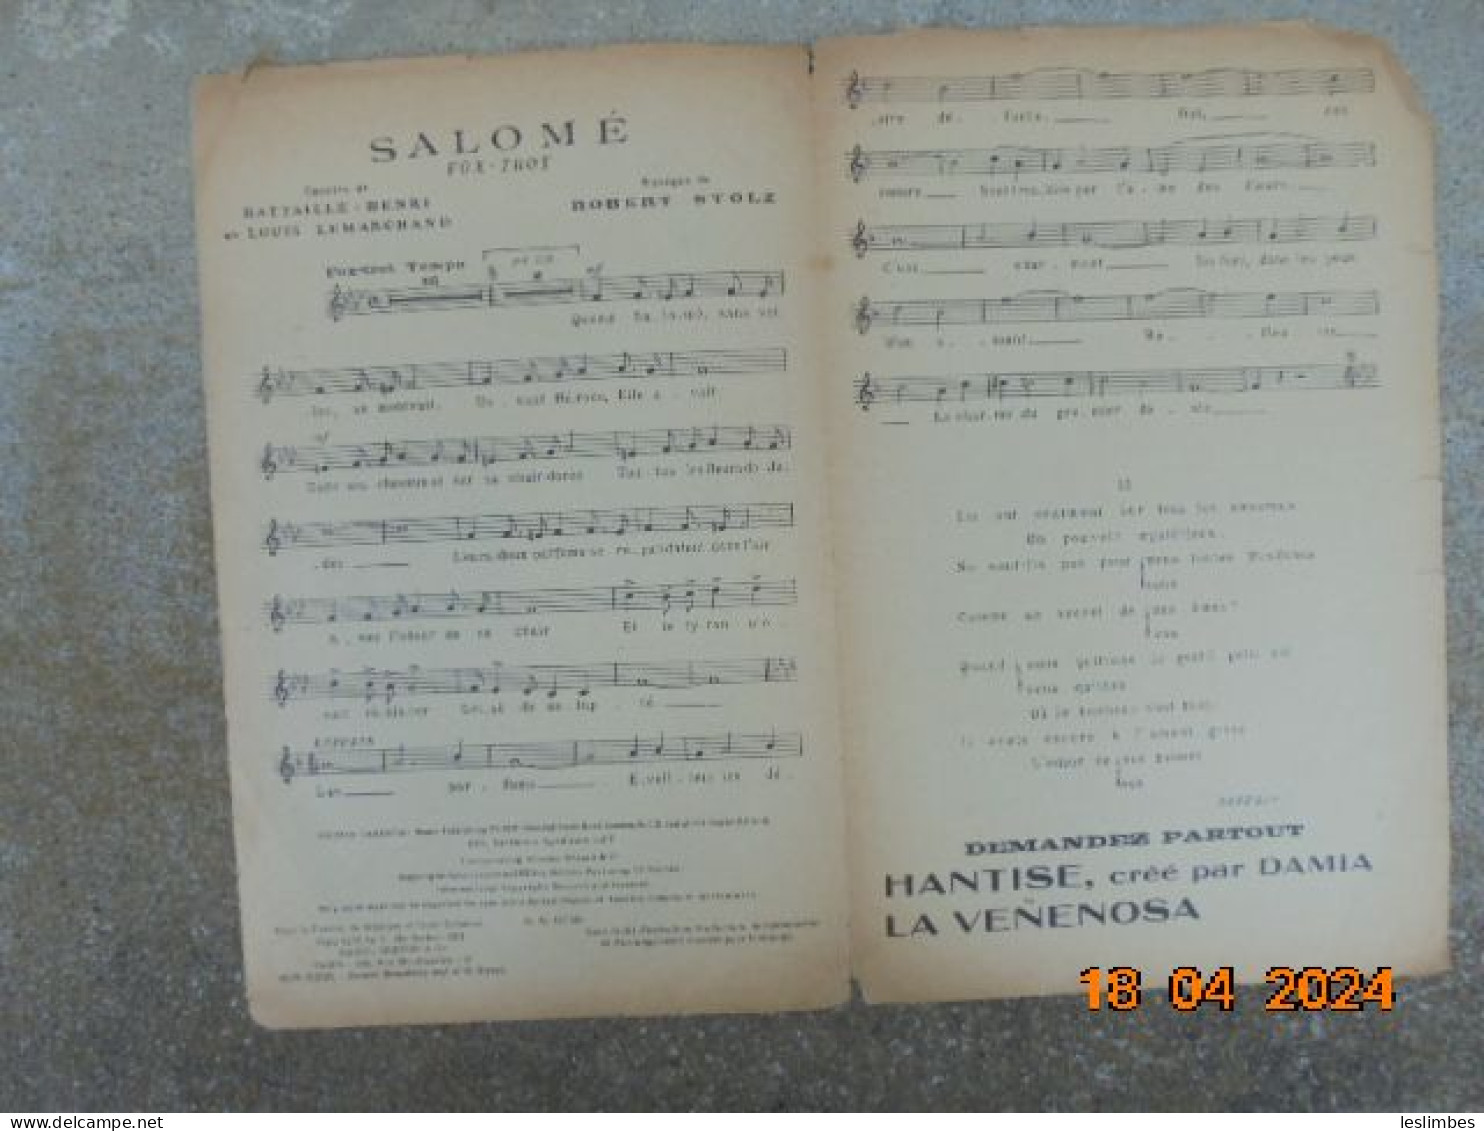 Salome [partition] Fox-Trot - Battaille Henri, Robert Stolz - Raoul Breton & Cie - Scores & Partitions